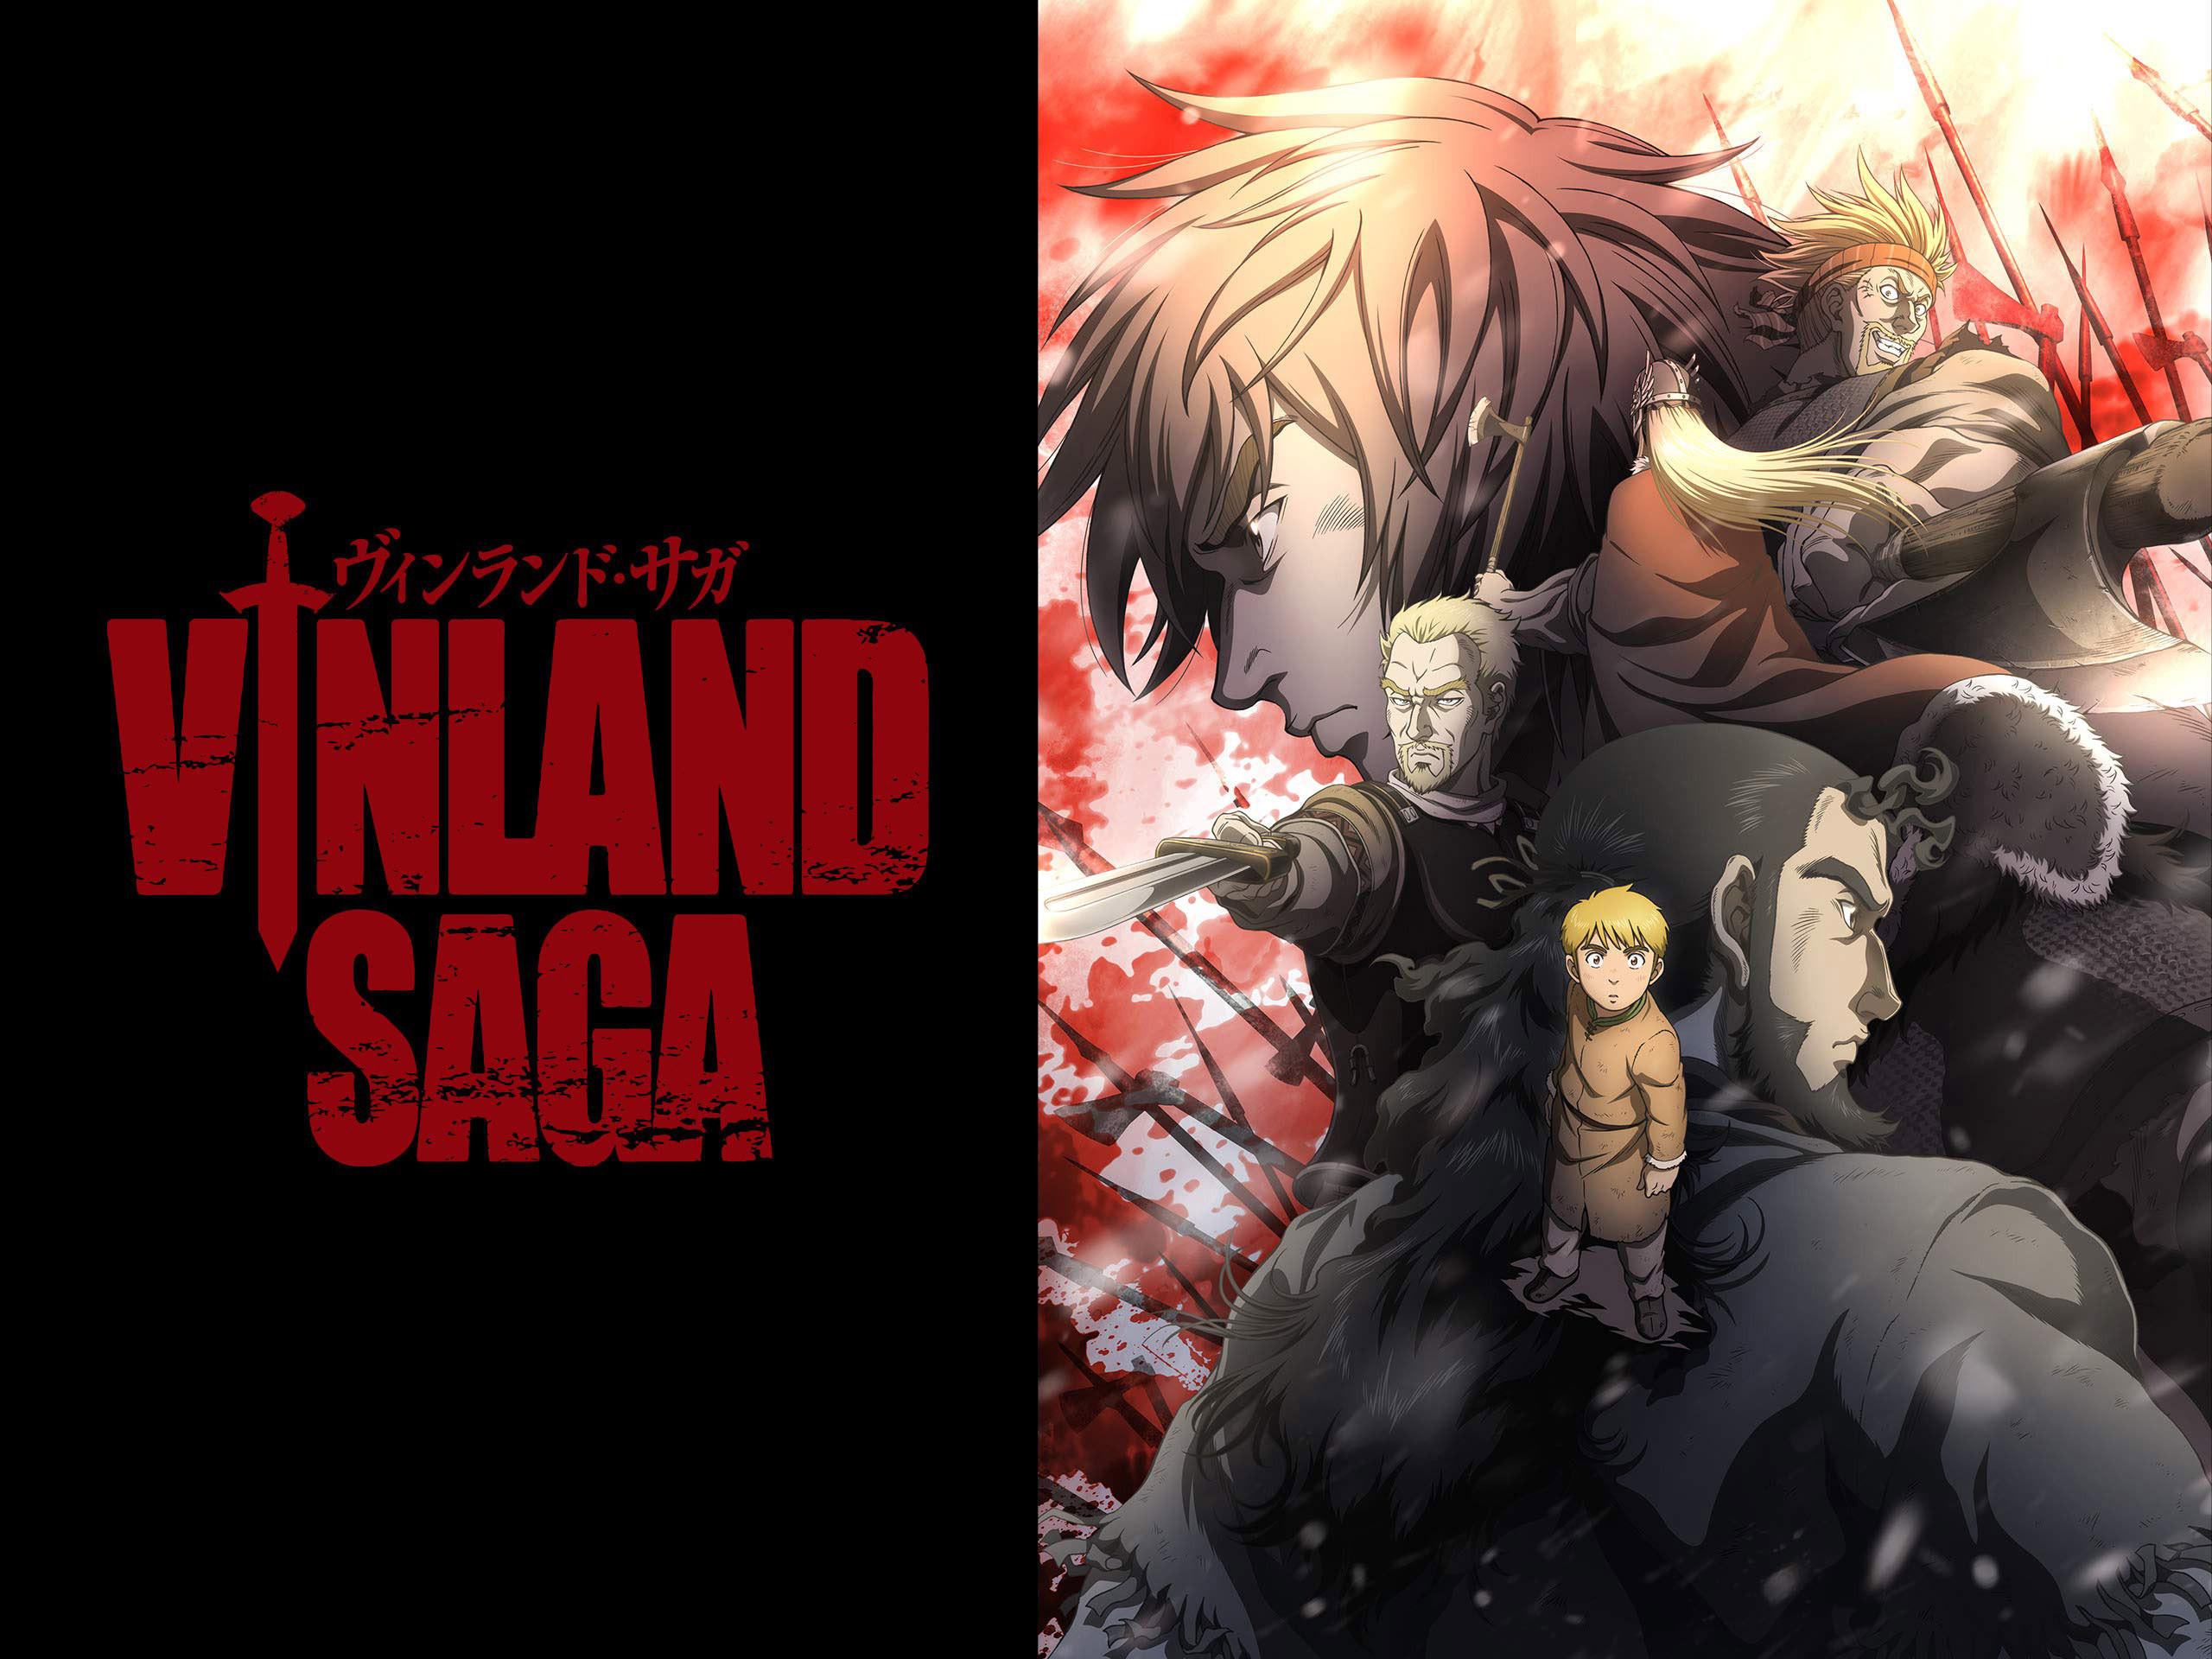 Vinland Saga anime predstavi "posebni napovednik" za prihodnje poglavje v mangi